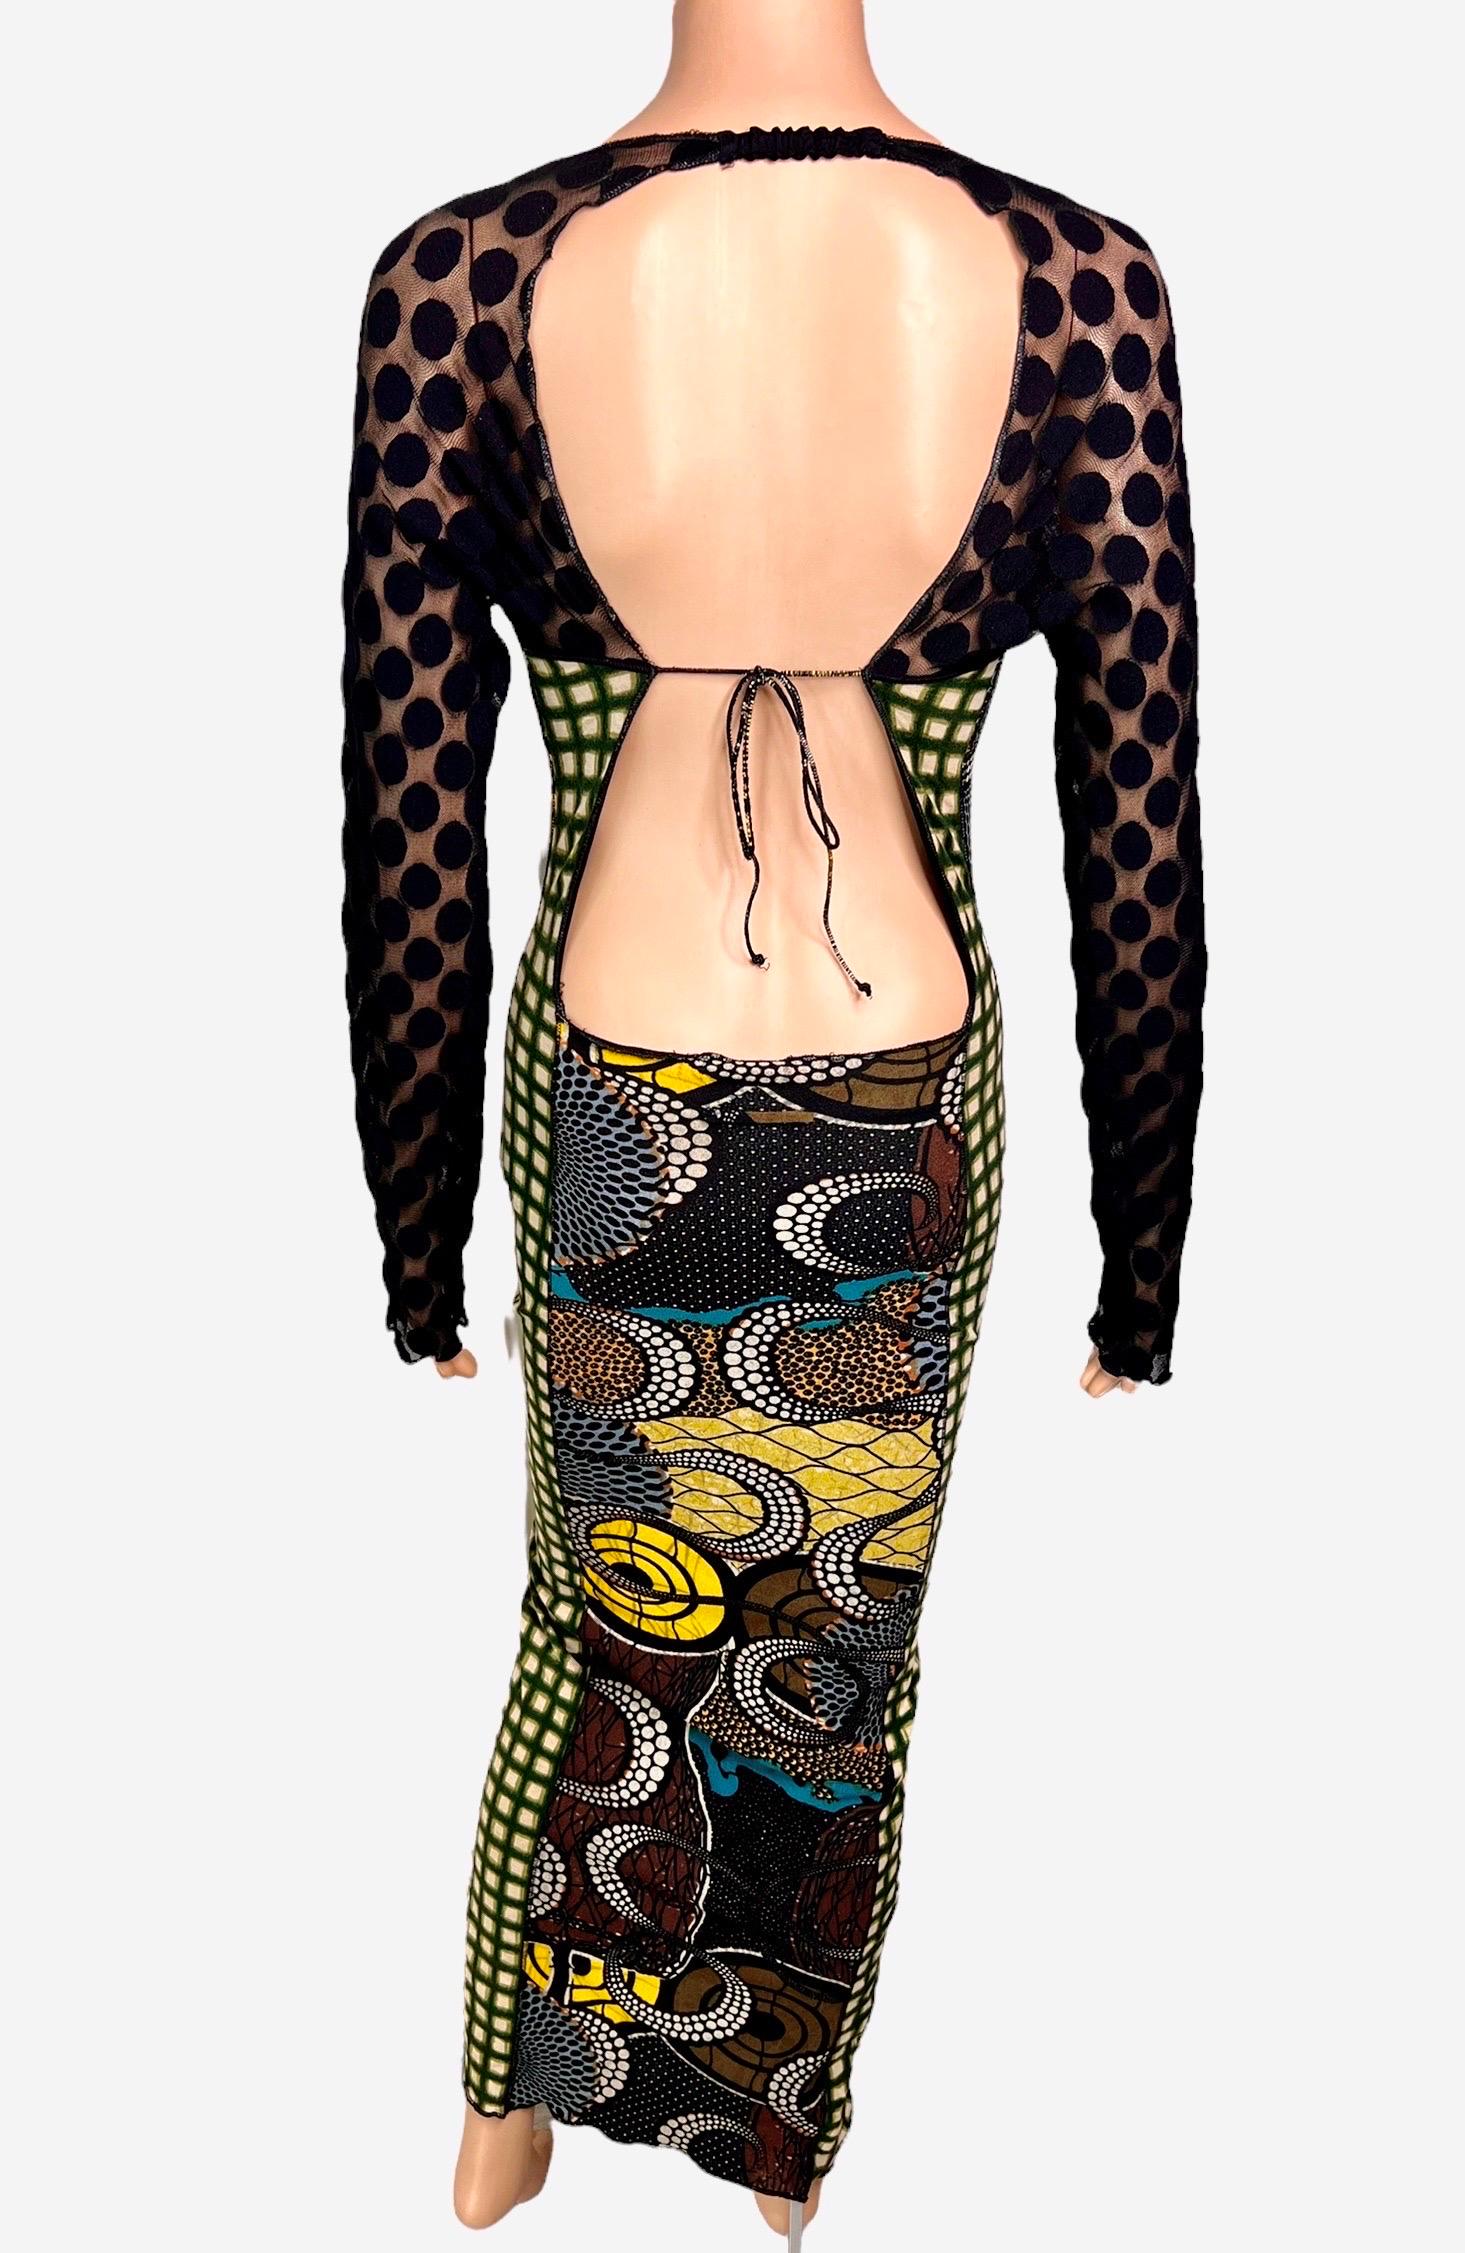 Jean Paul Gaultier Soleil c.1996 Op Art Circle Dots Print Cutout Back Maxi Dress For Sale 1